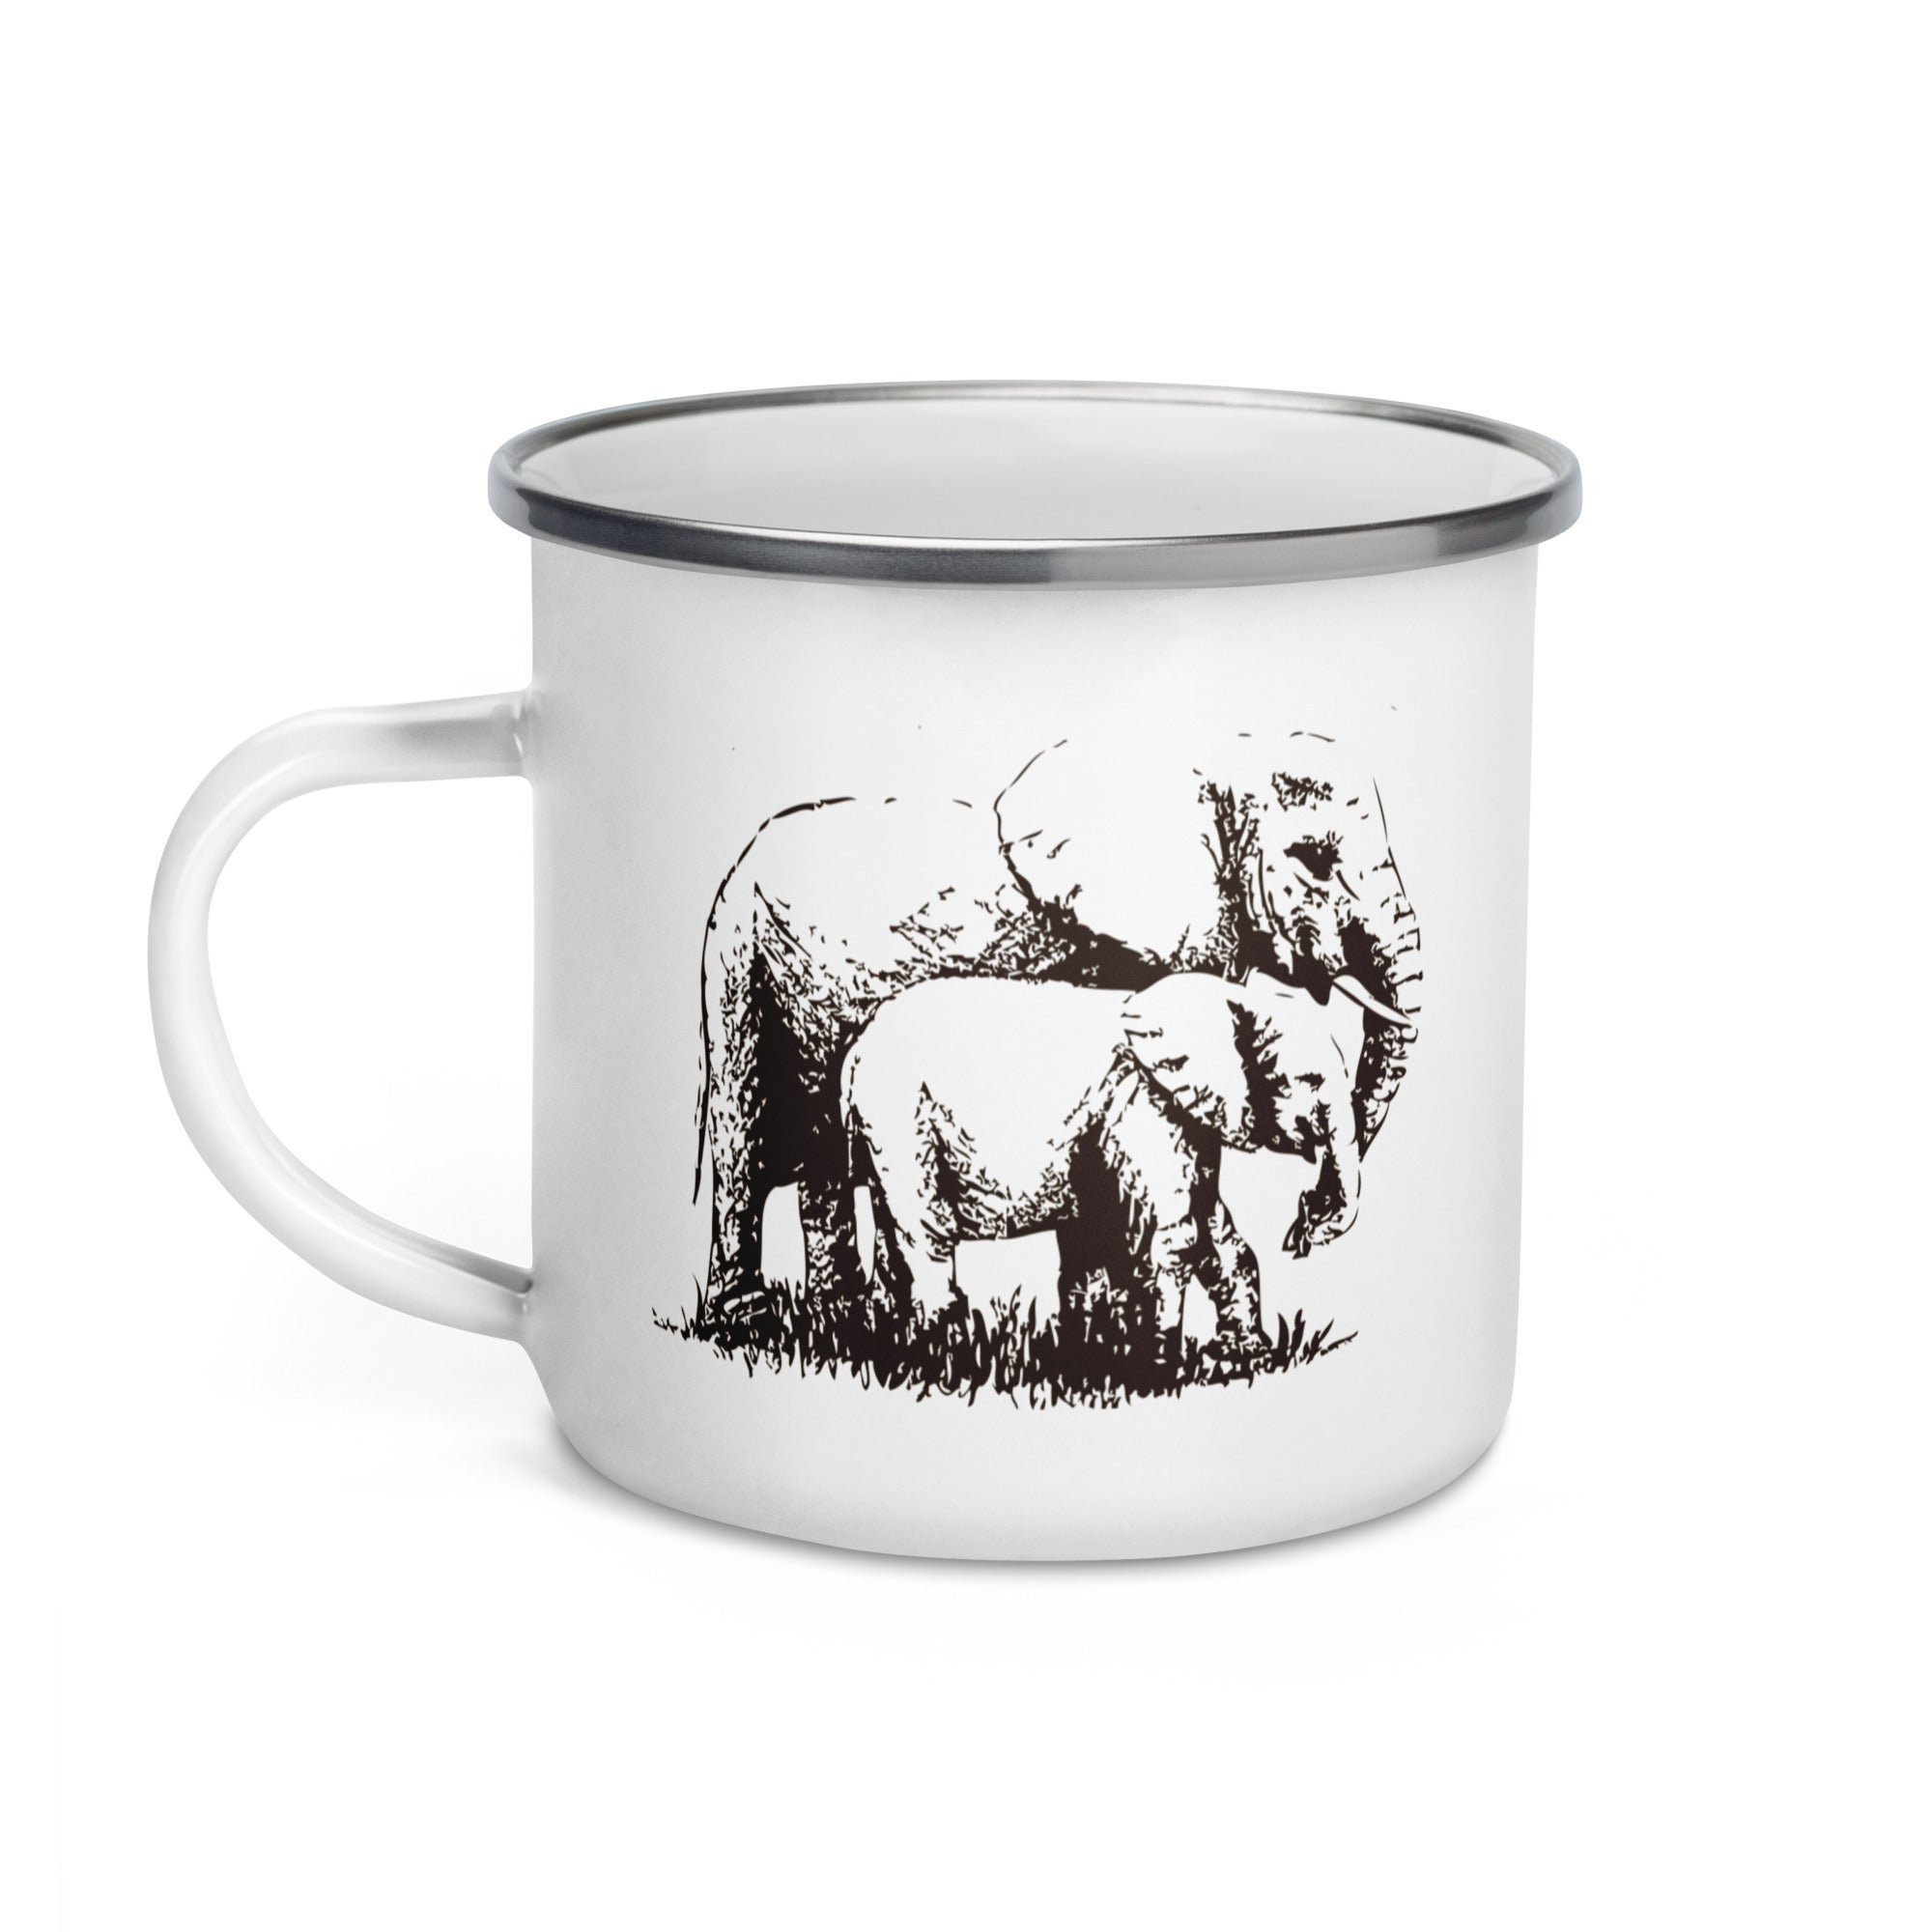 Enamel Mug- Hand Drawn Elephant Mono